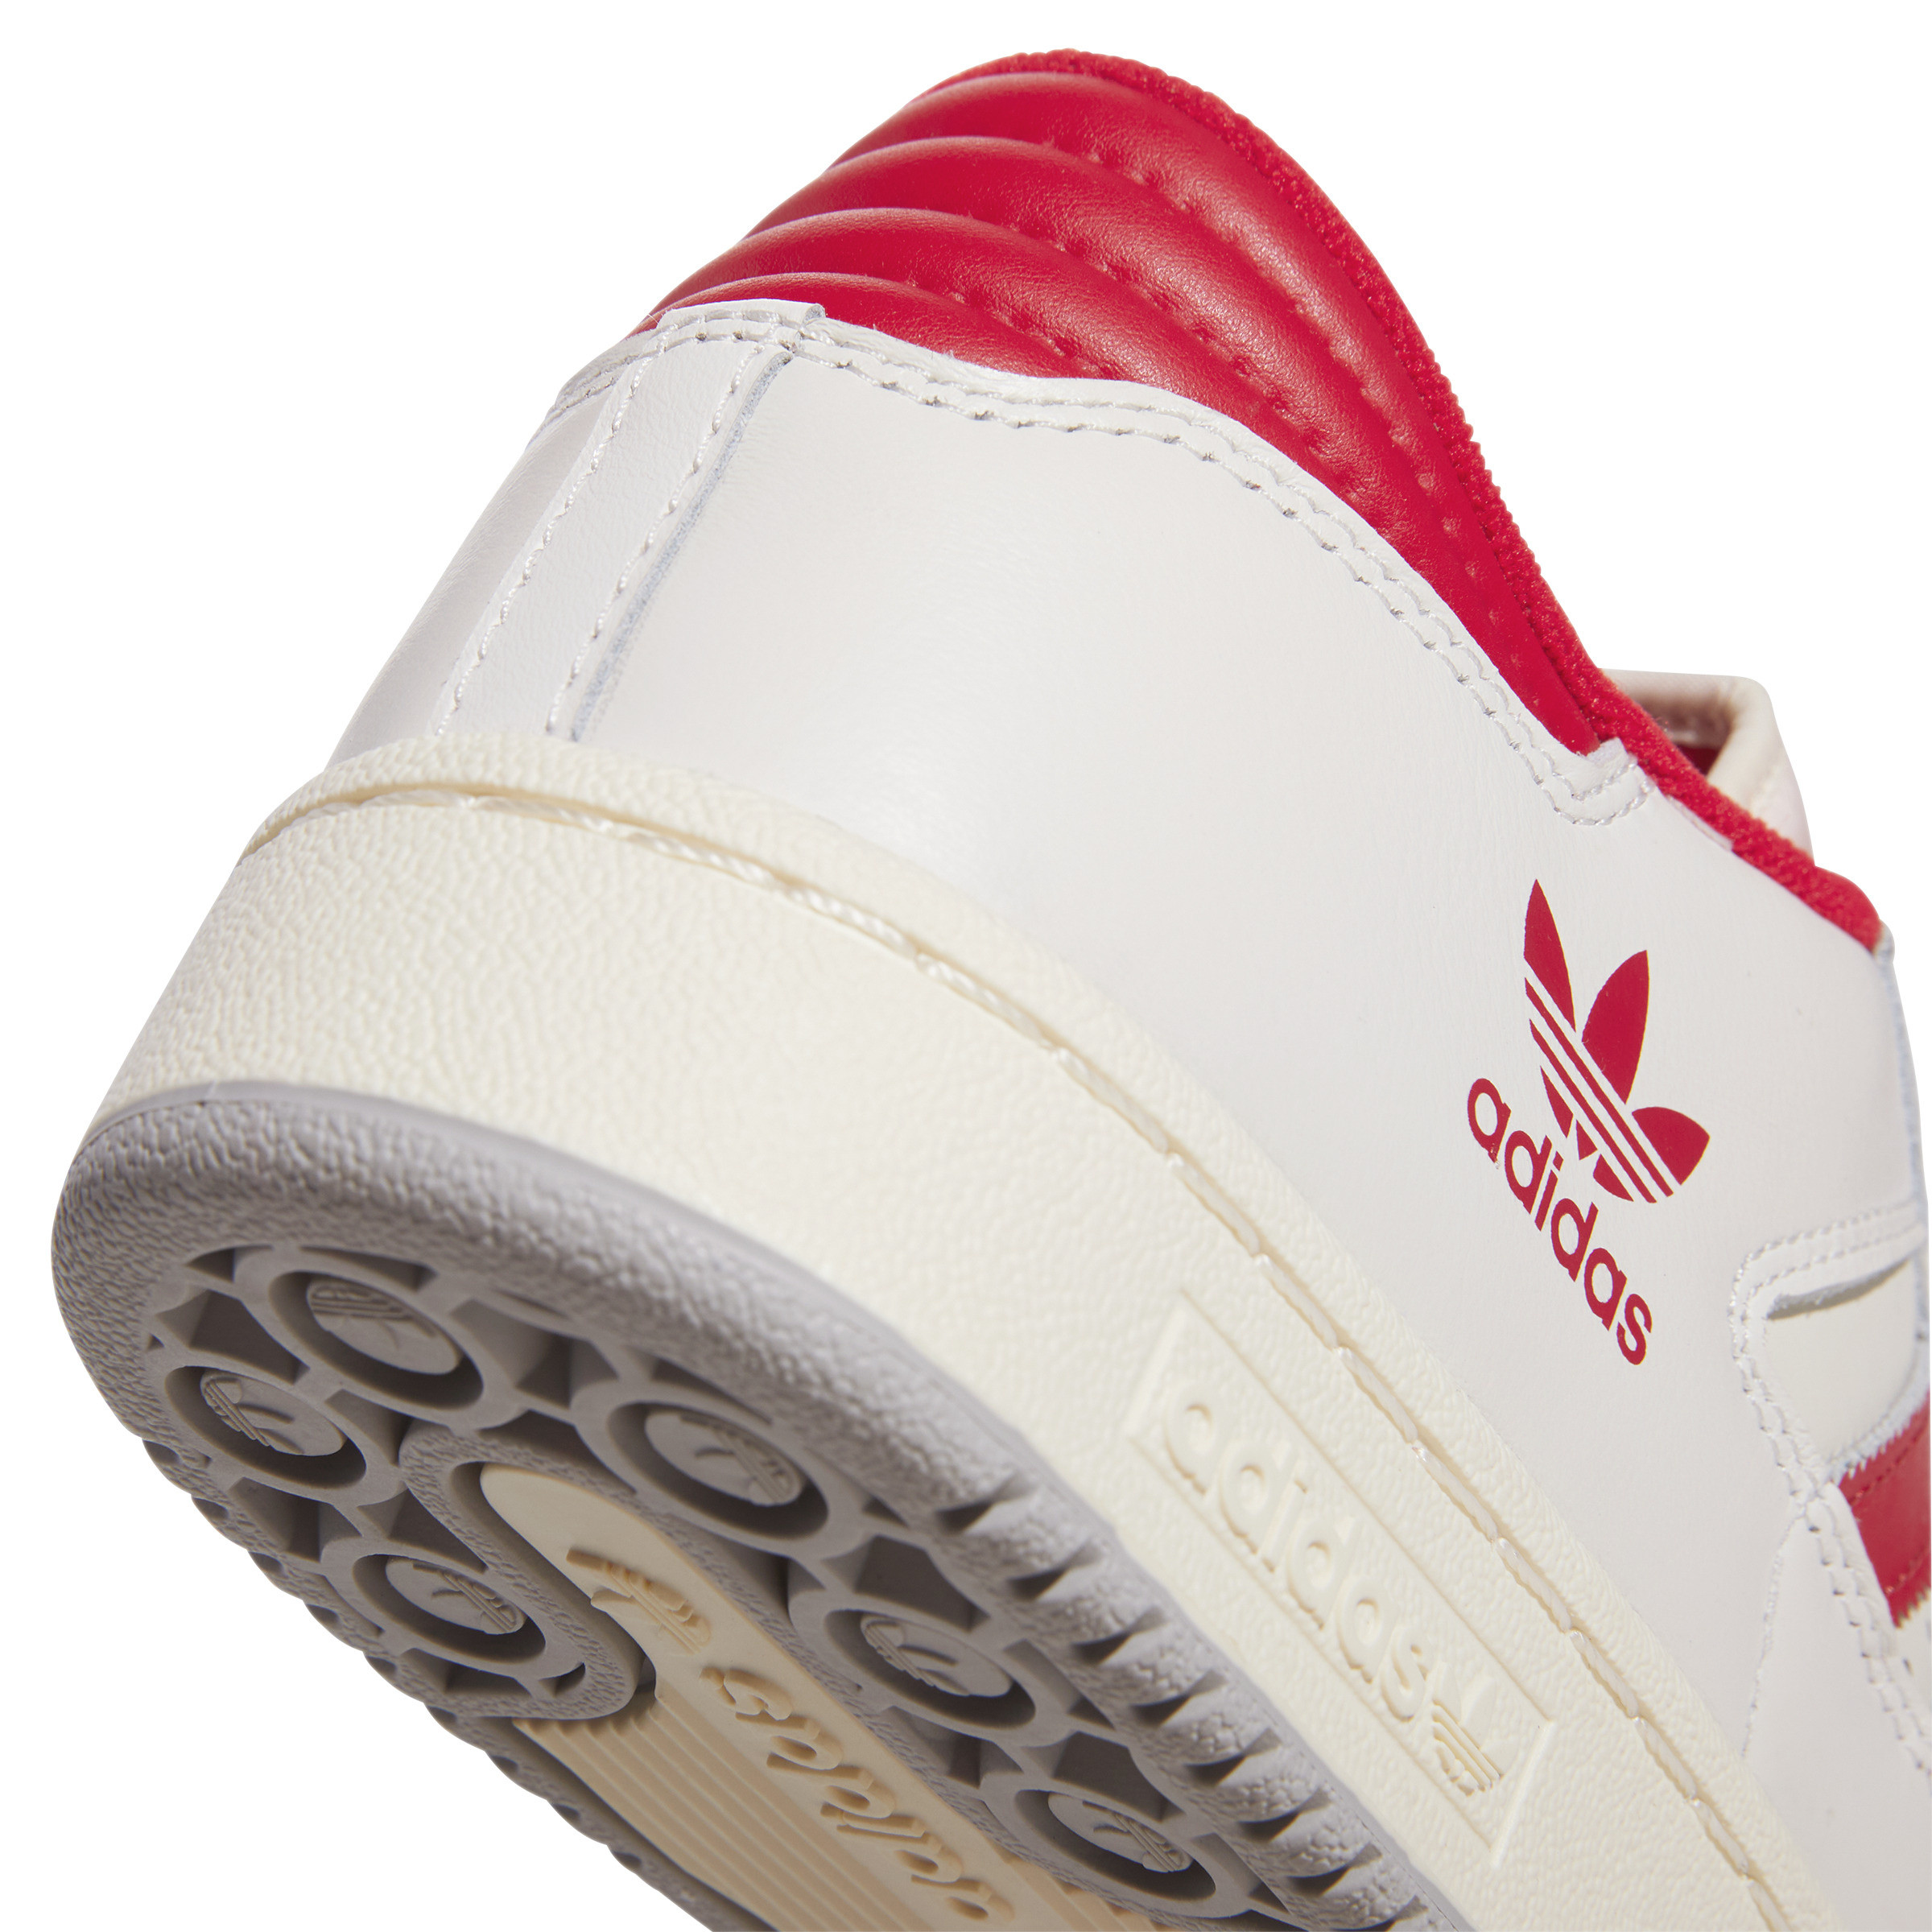 Adidas - Scarpe Centennial 85 low, Bianco, large image number 5